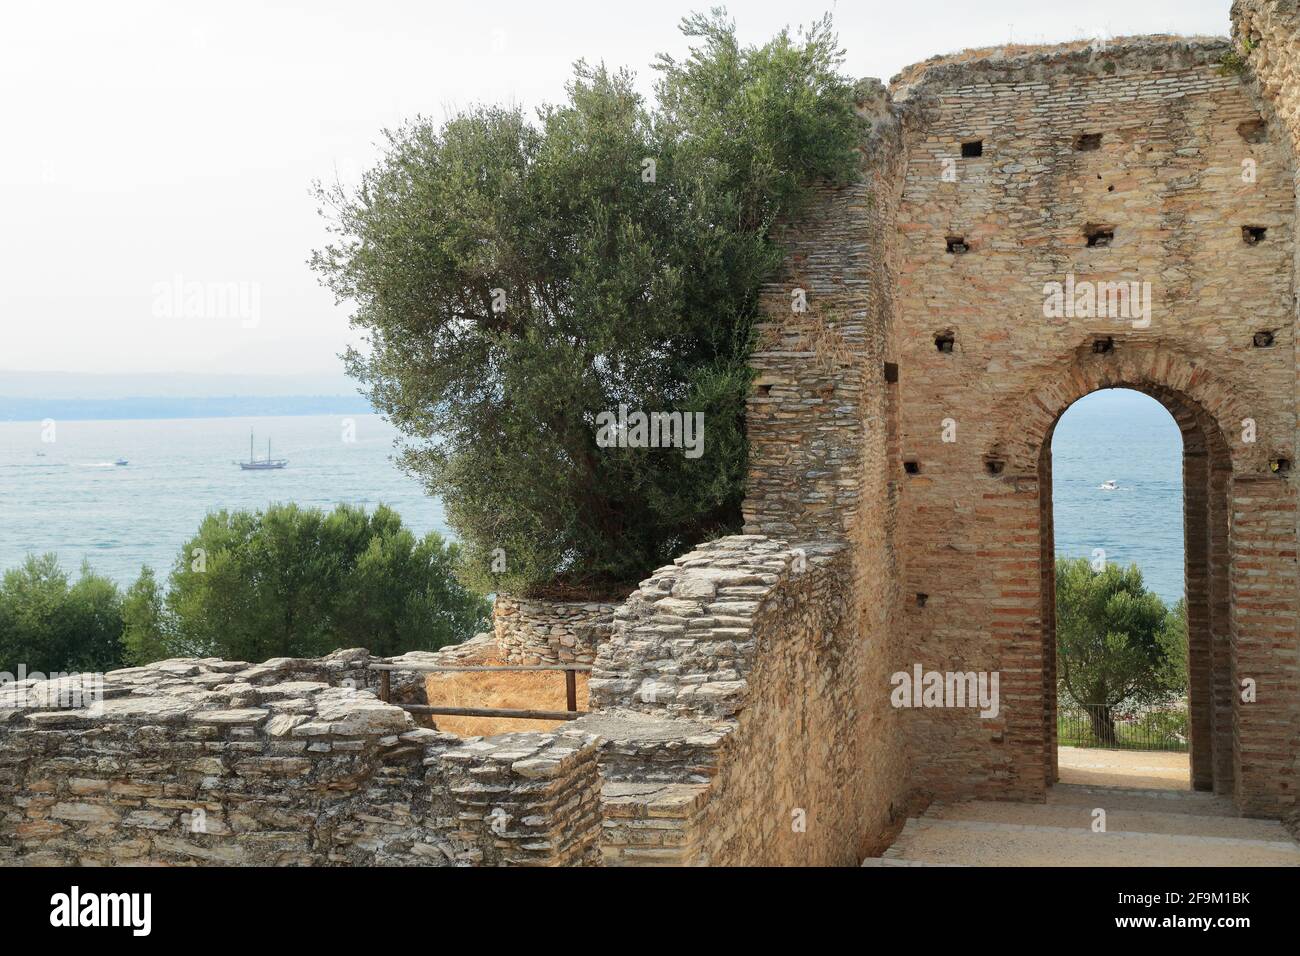 Grutas de Catullo / Grotte di Catullo. Ruinas de una villa romana. Sirmione, Lago de Garda, Lago di Garda, Gardasee, Italia Foto de stock